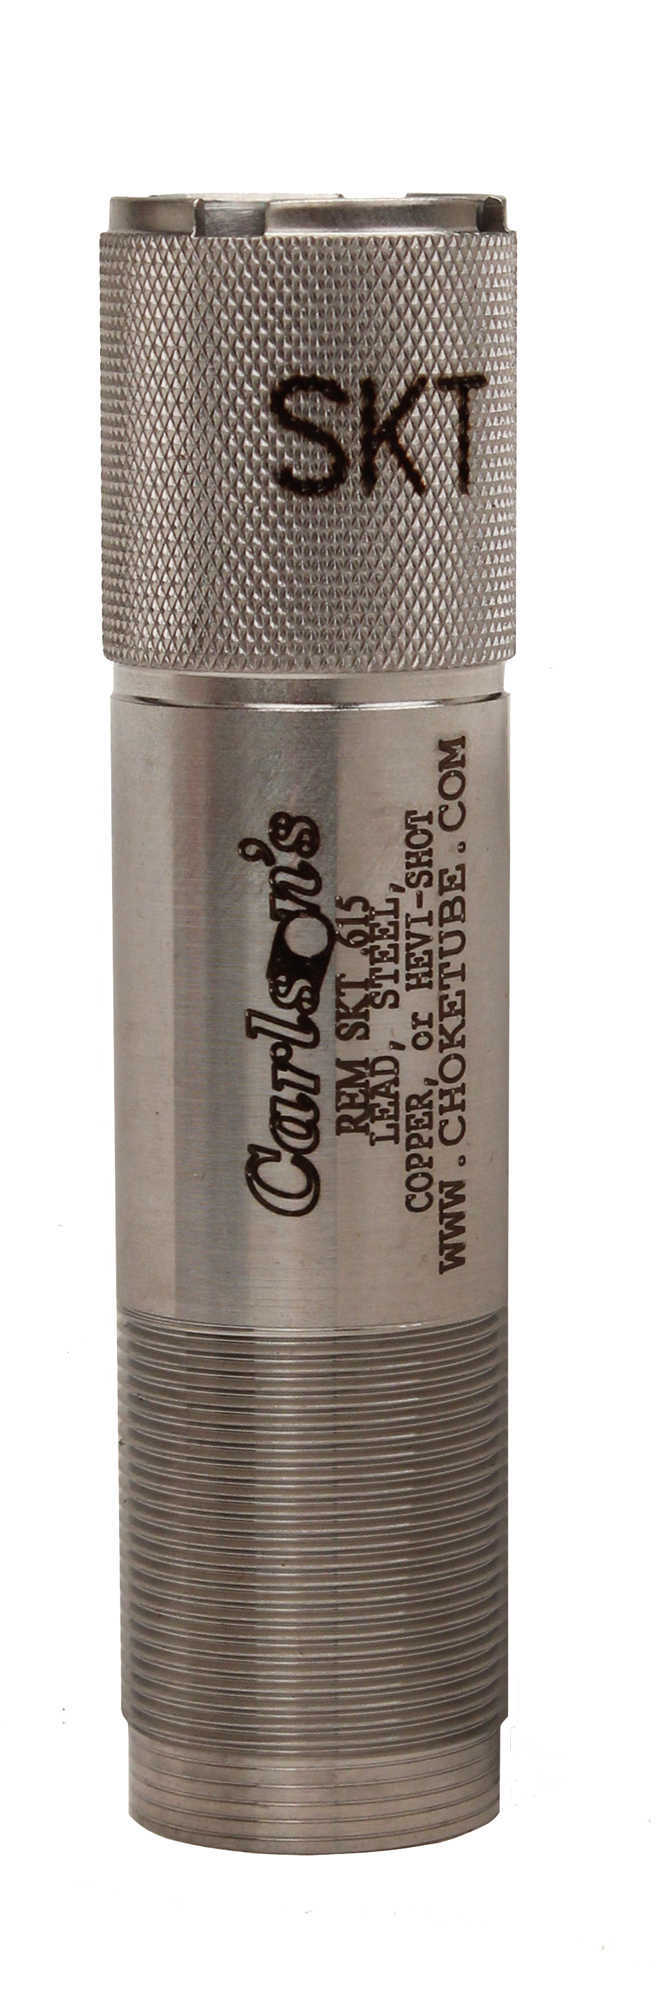 Carlsons Remington Sporting Clay Choke Tubes 20 Gauge Skeet .615 13372